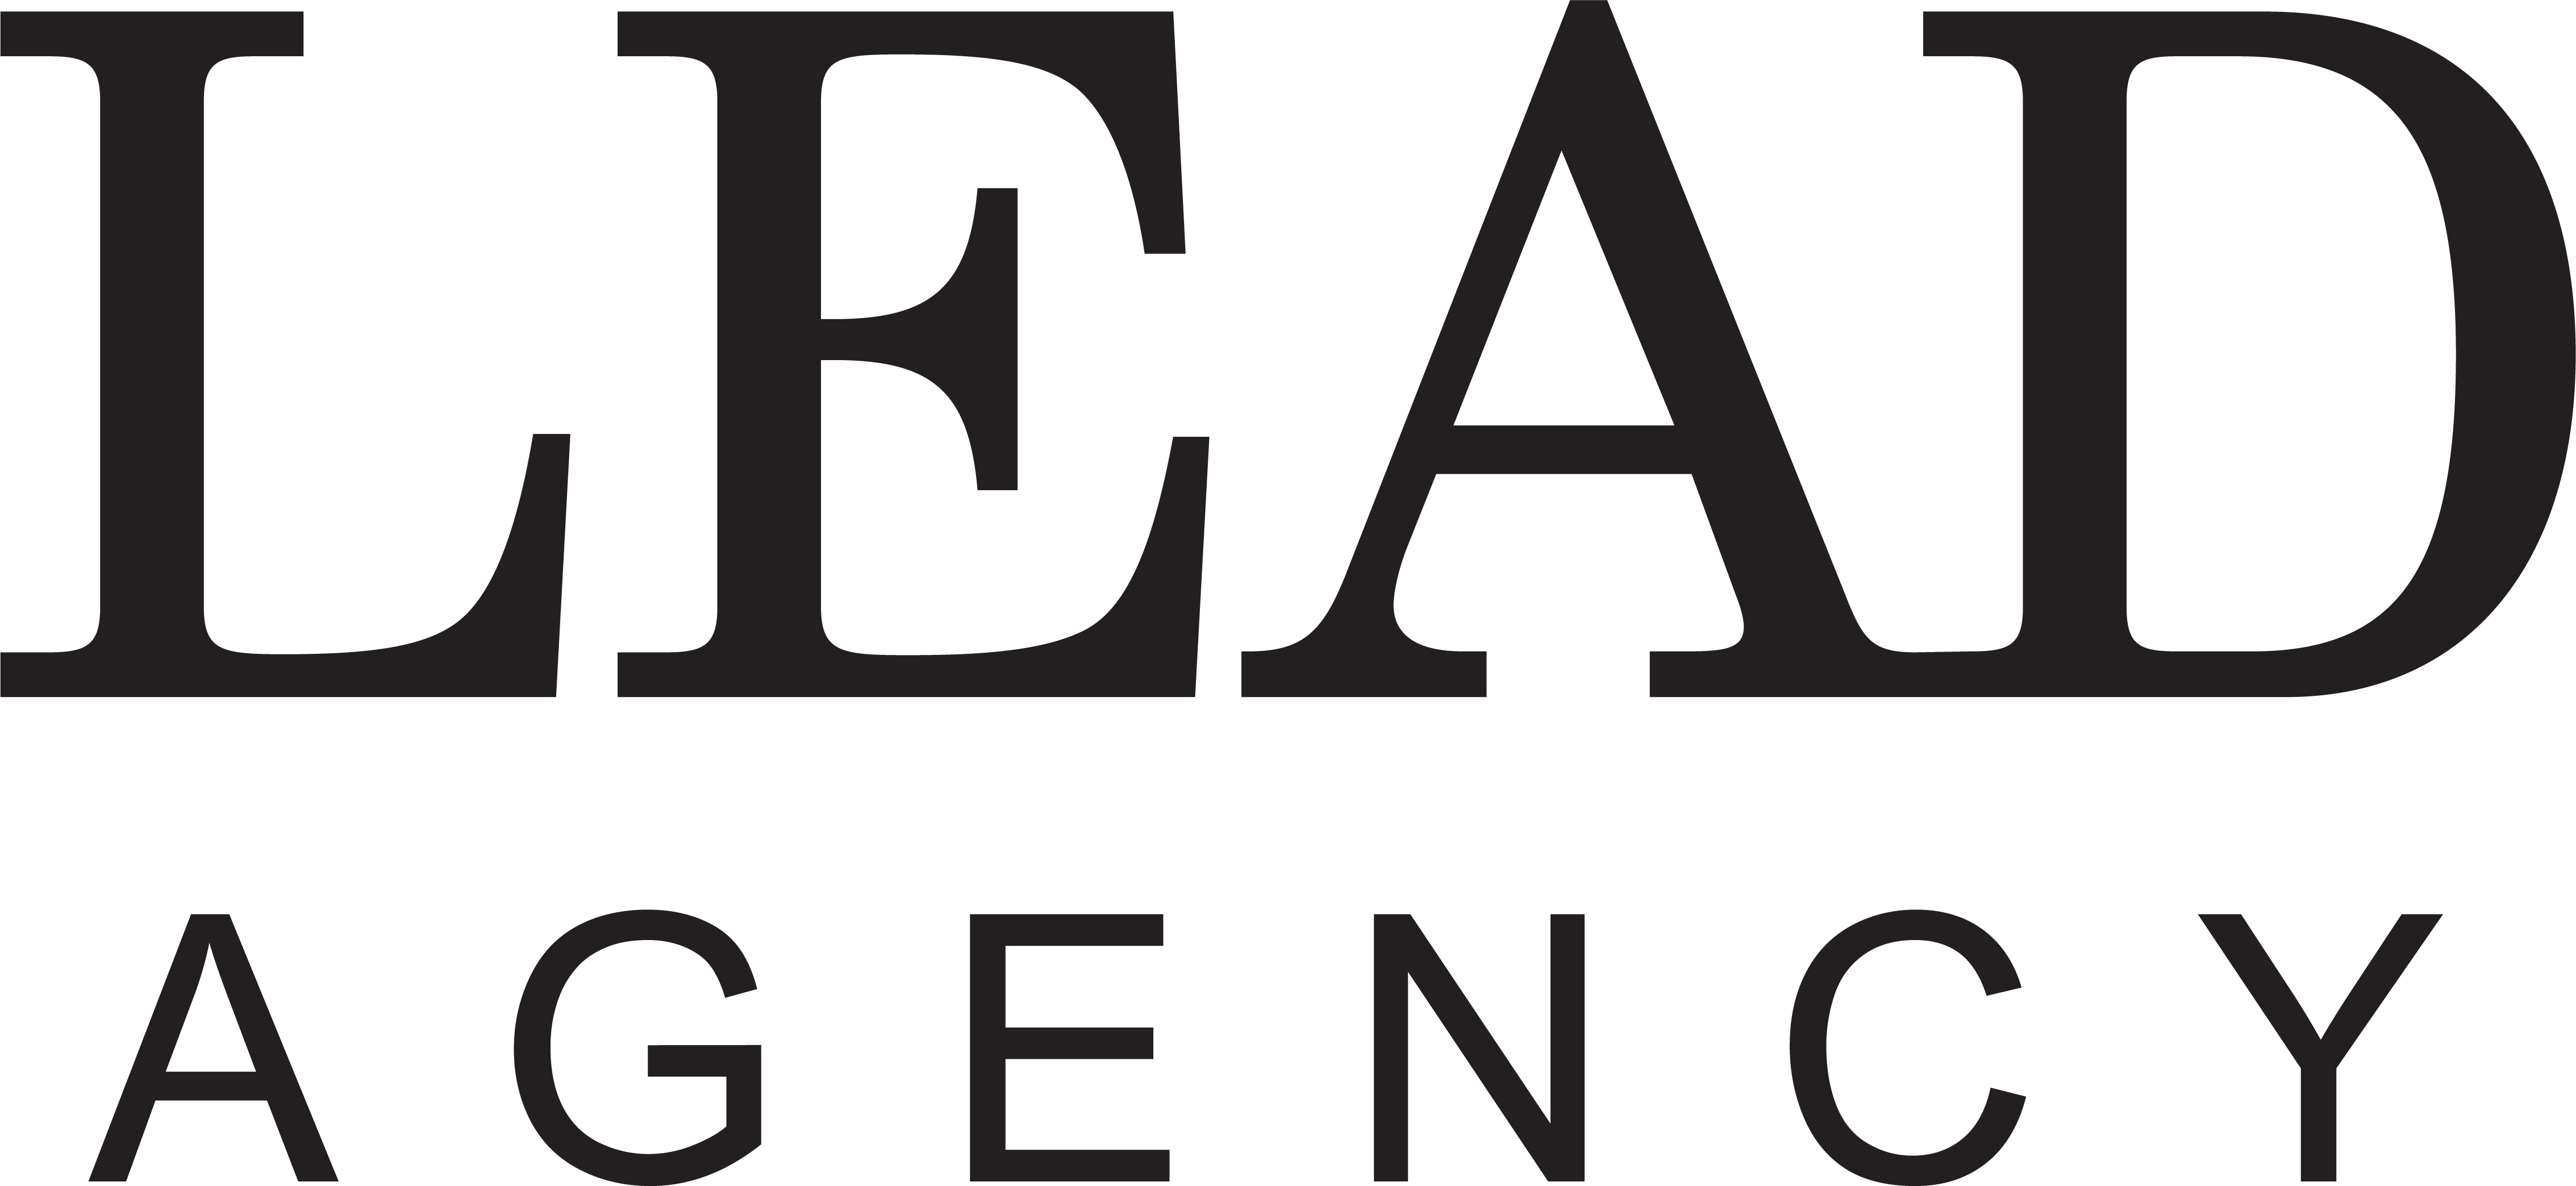 LEAD Agency